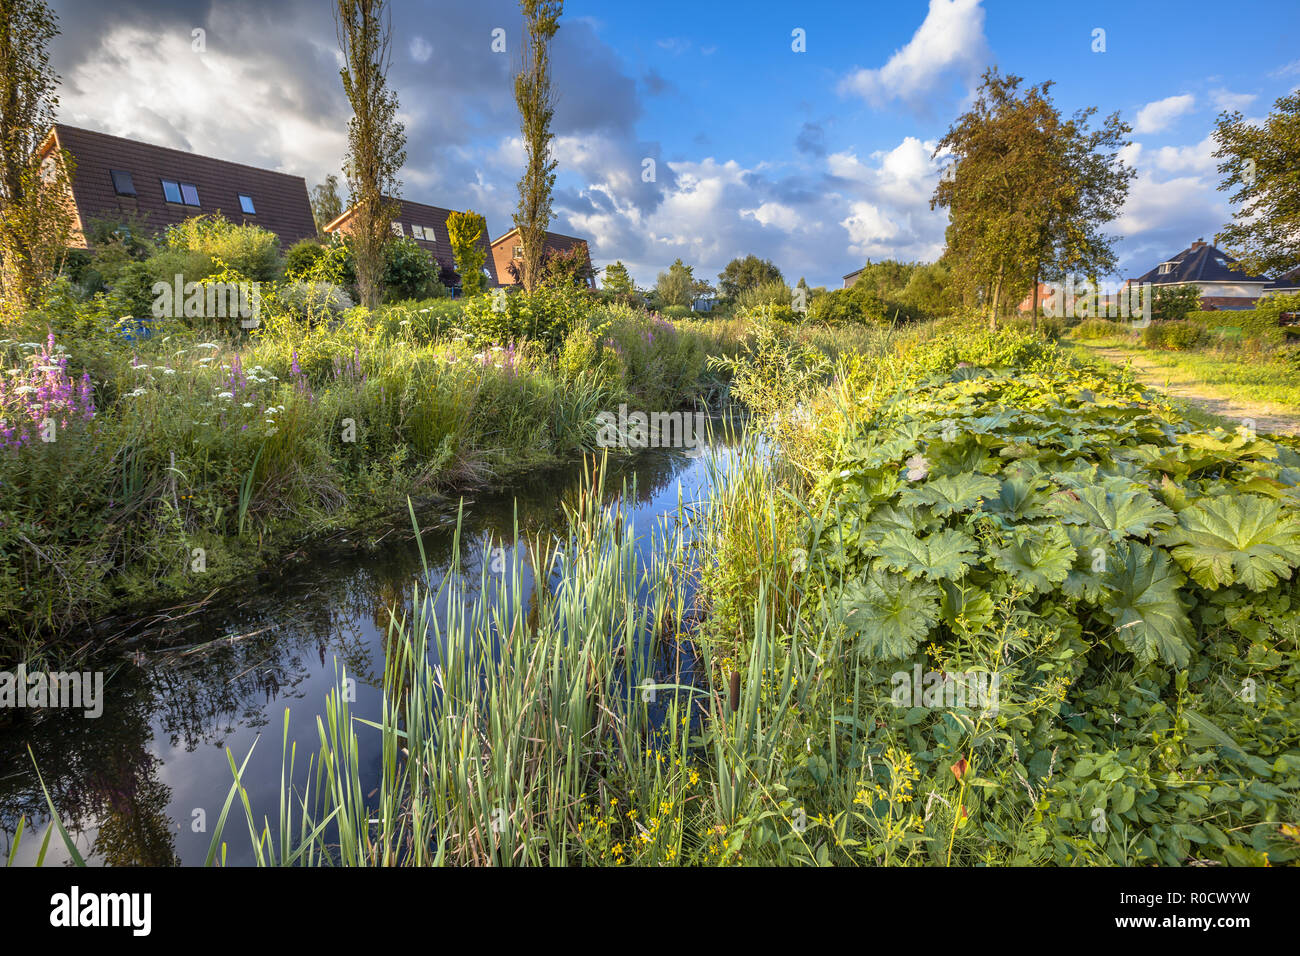 Décharge de pluie excessive du canal de drainage avec la végétation naturelle sur les banques agissant comme une connexion écologique dans la zone urbaine de Soest, Pays-Bas Banque D'Images